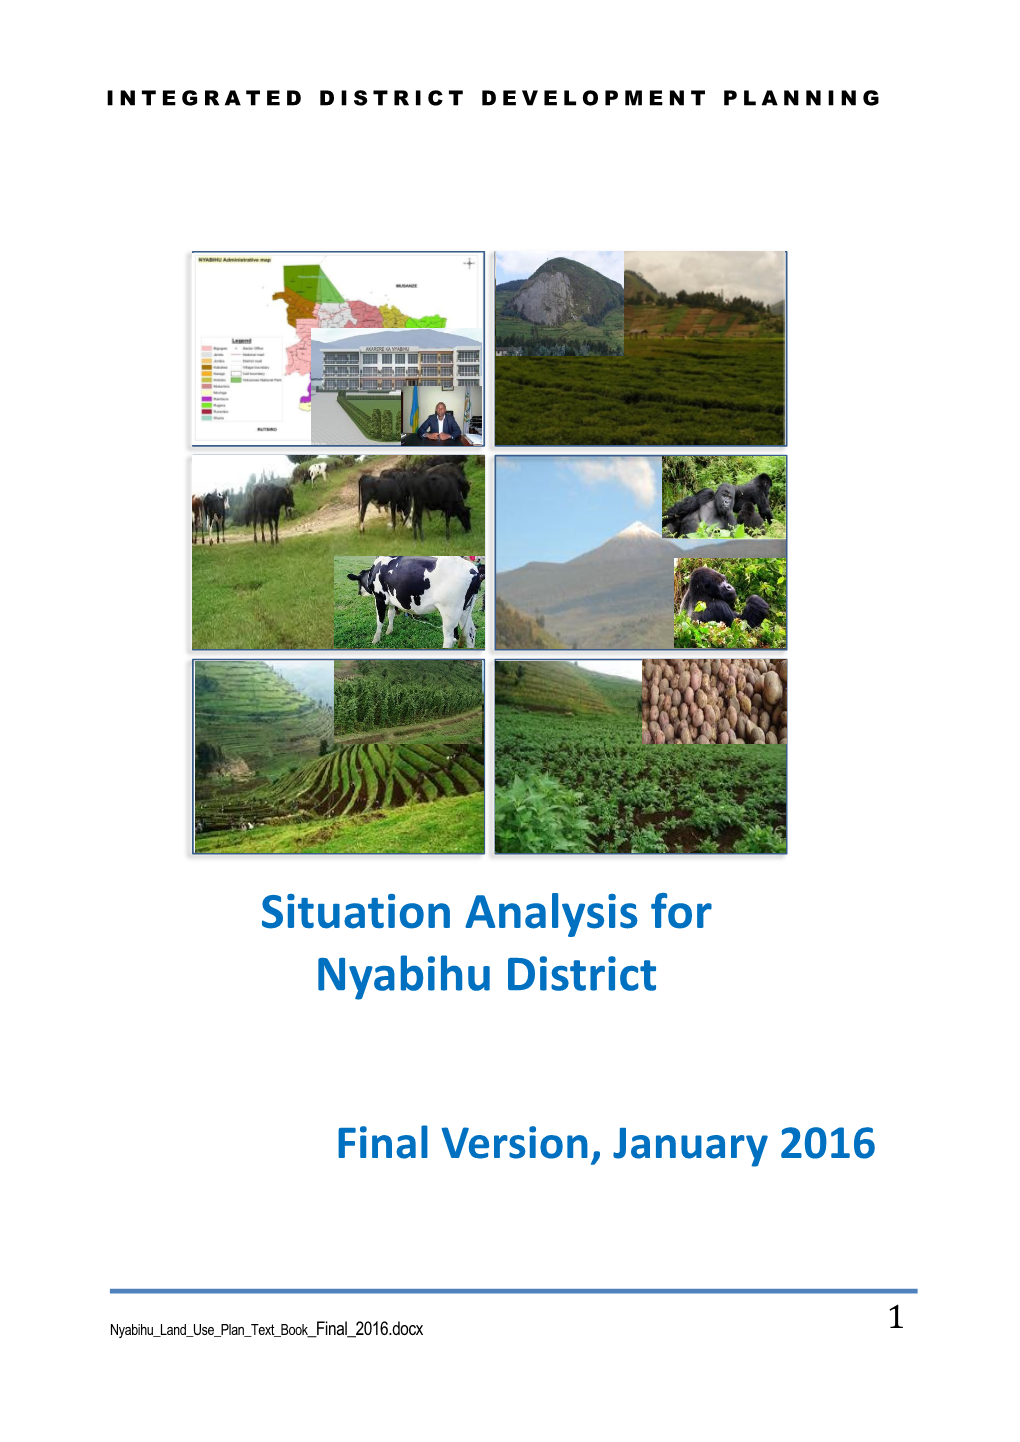 Situation Analysis for Nyabihu District